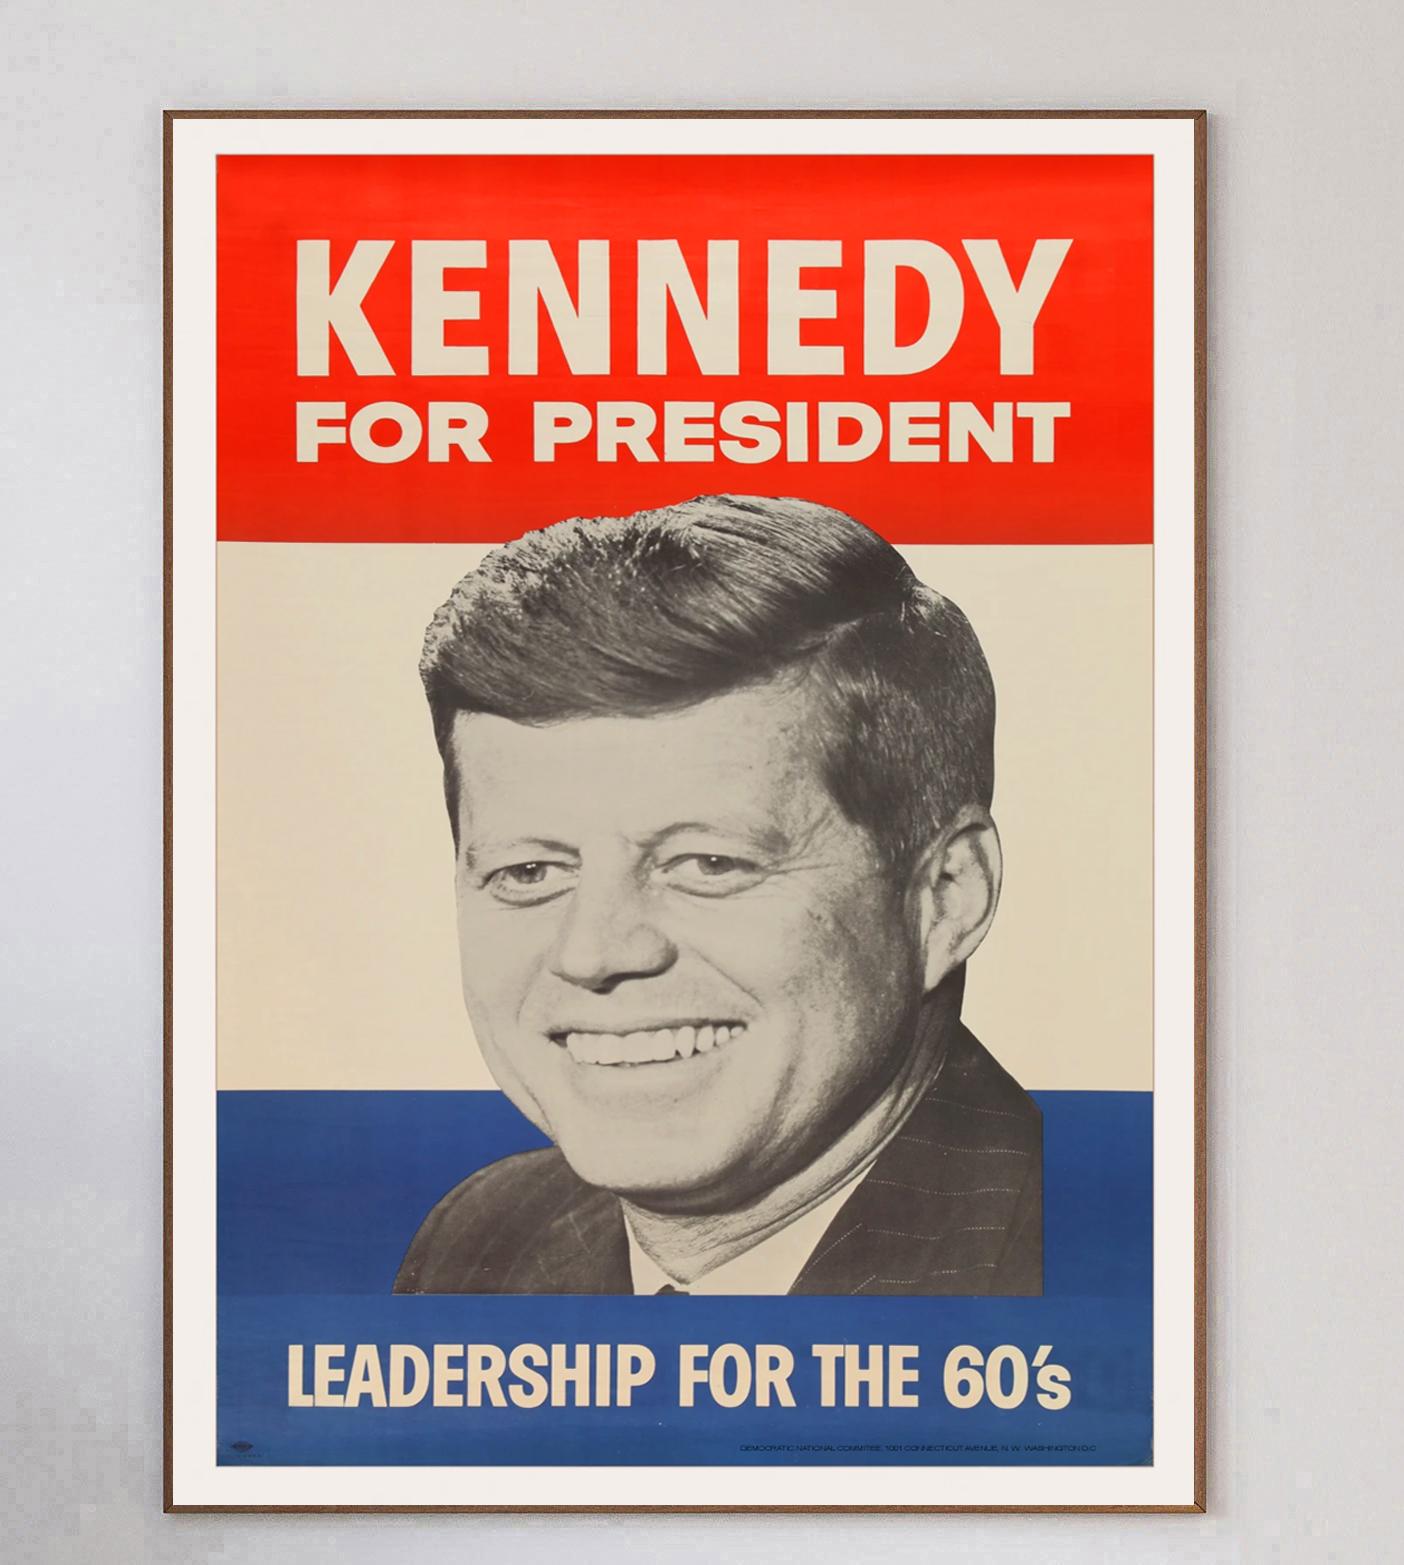 Affiche brillante imprimée sur une feuille de plastique épais pour la campagne présidentielle de John F. Kennedy en 1960. Intitulée 